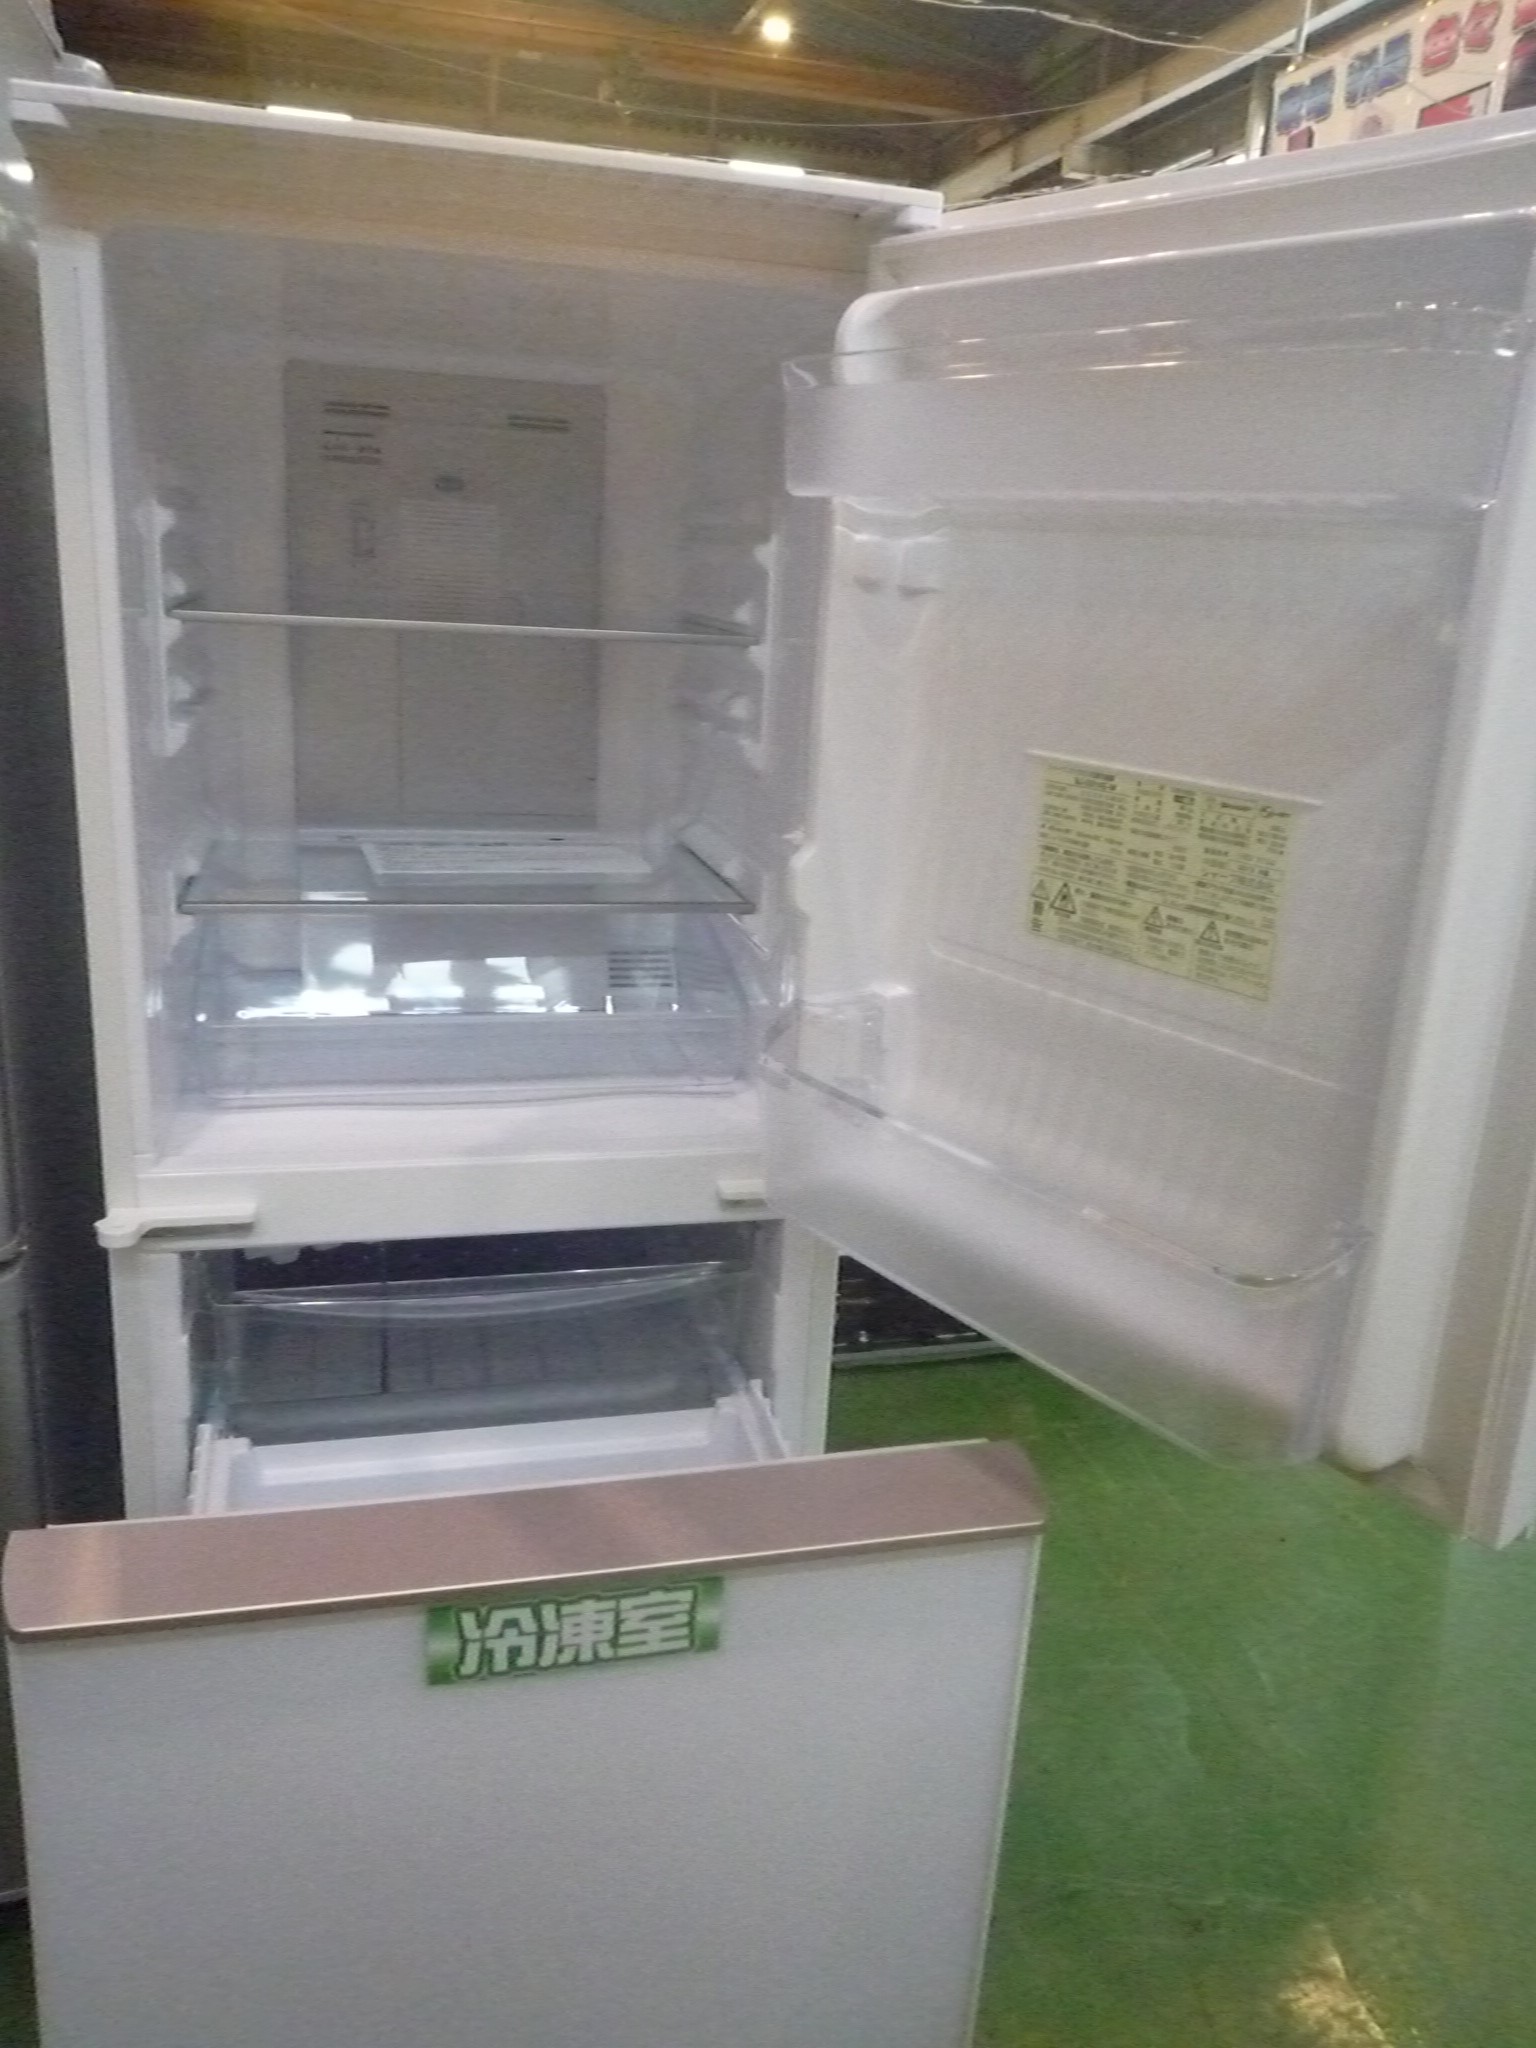 買い物をお SHARP 冷蔵庫　SJ-GD14E-W 冷蔵庫